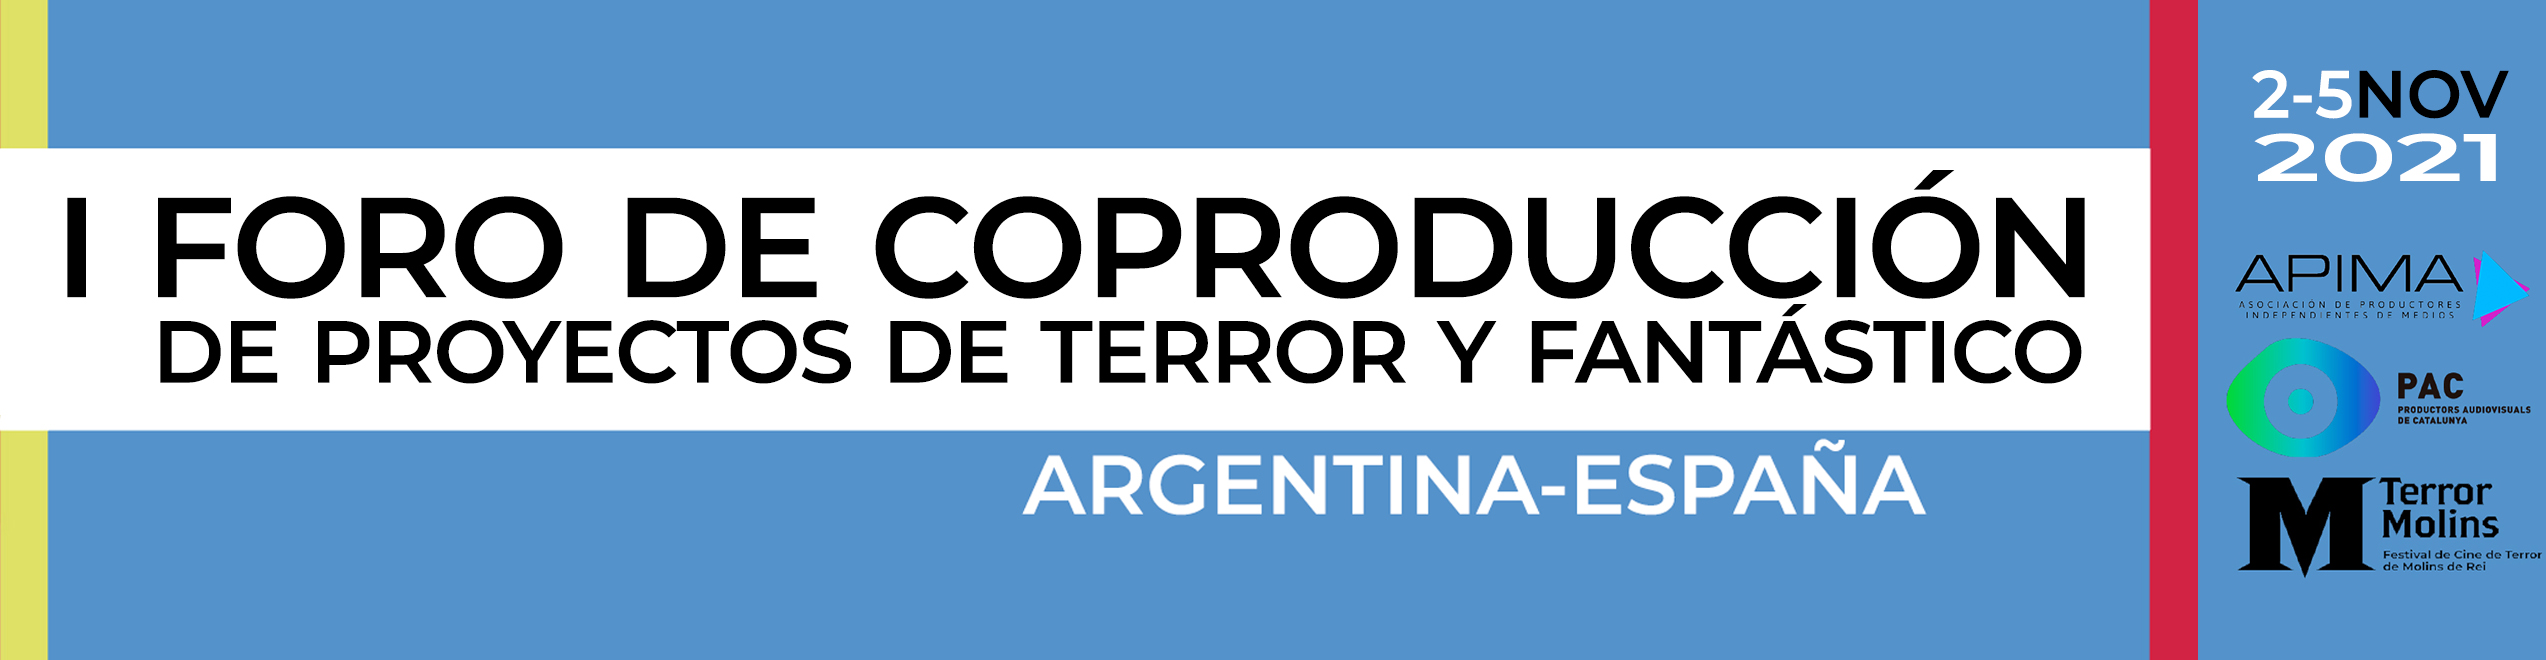 Foro de Coproducción Argentina-España de Proyectos de Terror y Fantástico